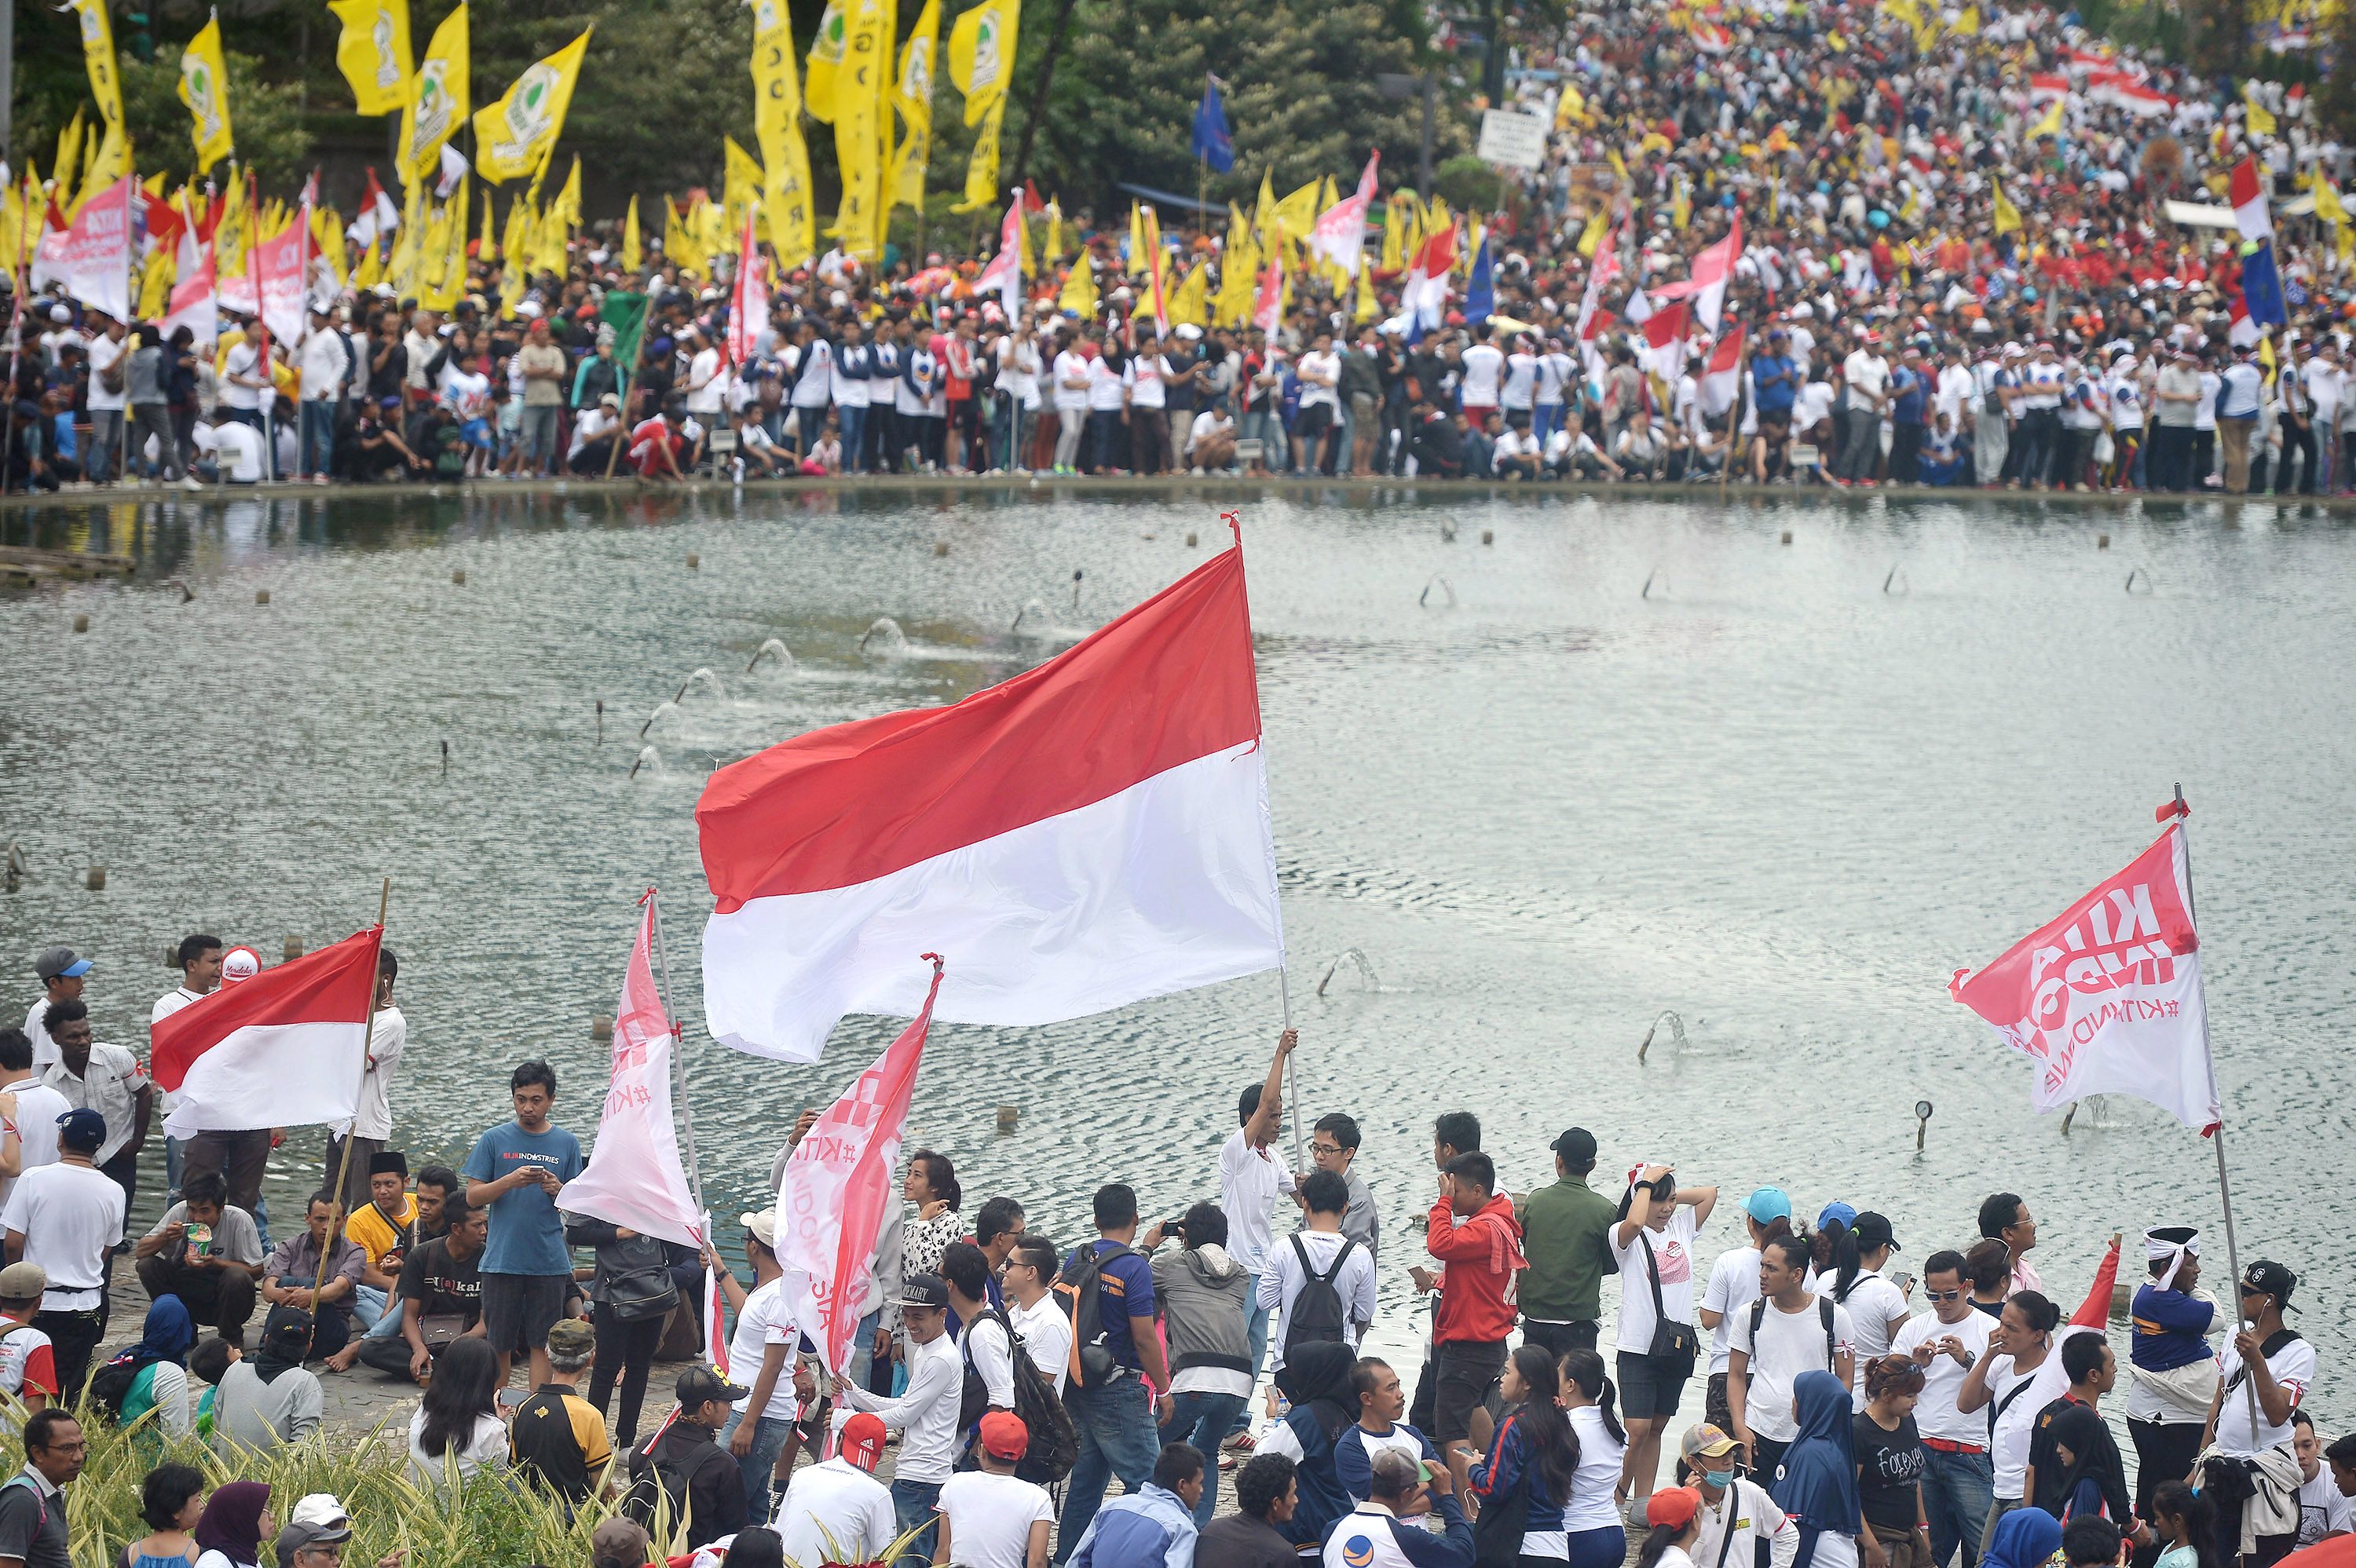 Massa yang tergabung dalam Aliansi Kebhinekaan mengikuti parade "Kita Indonesia" di Bundaran HI, Jakarta, pada 4 Desember 2016. Foto oleh Yudhi Mahatma/Antara 